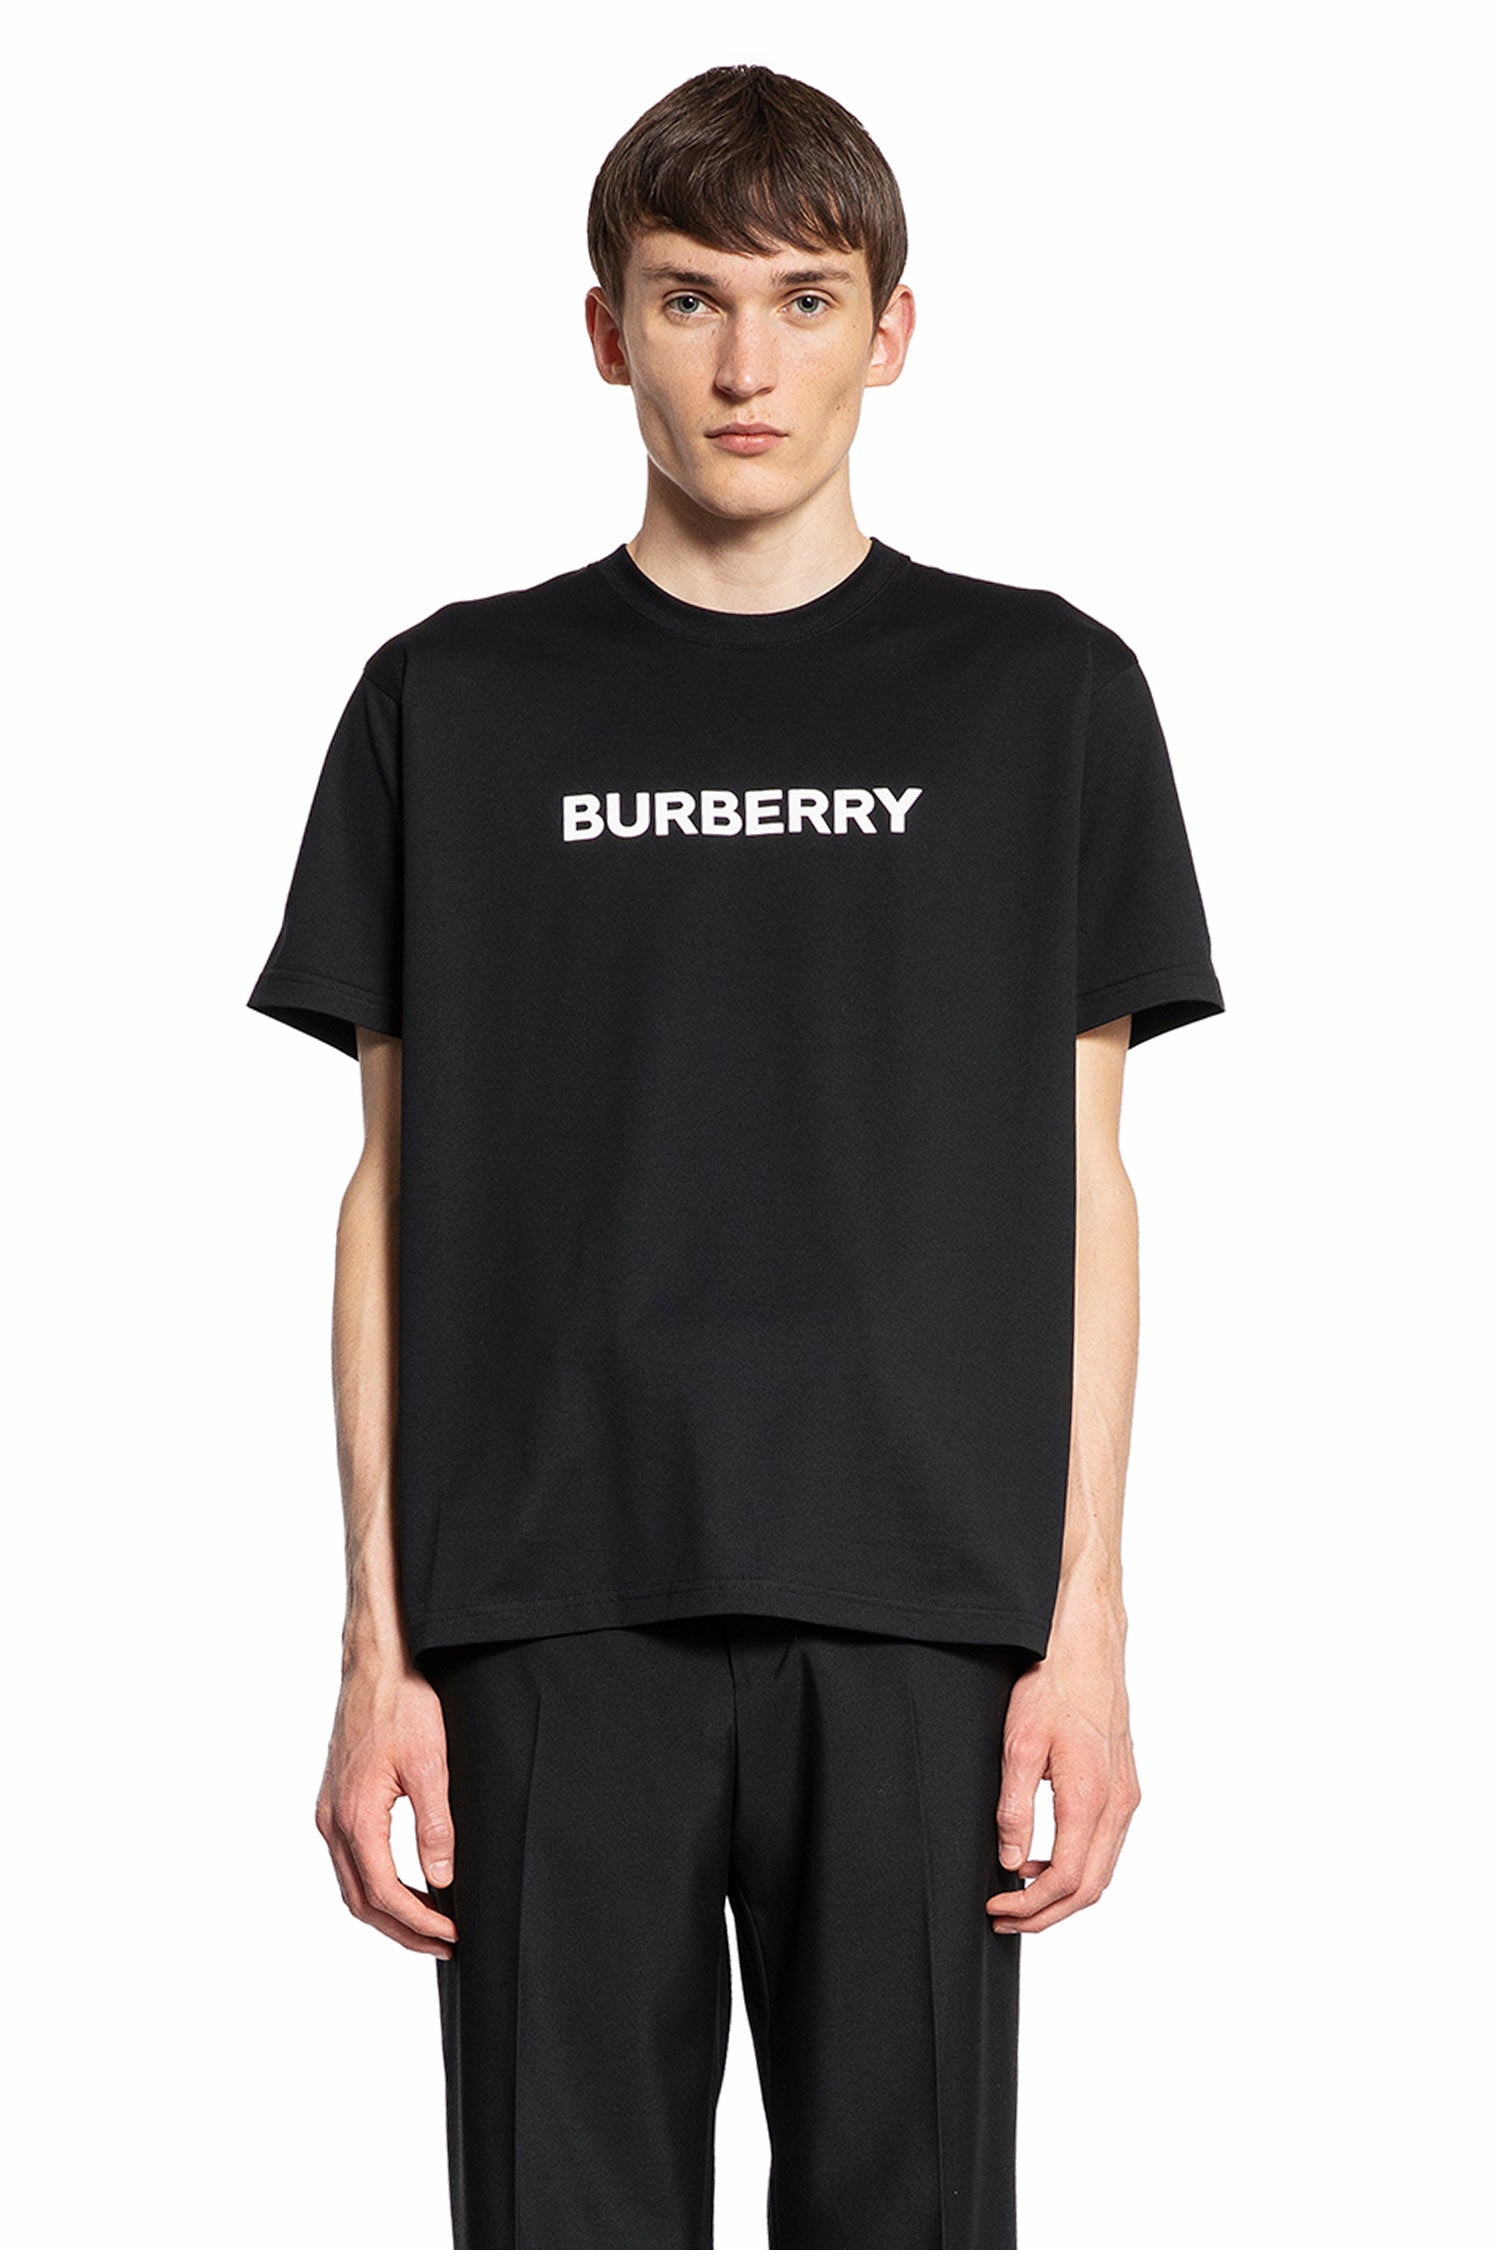 BURBERRY MAN BLACK T-SHIRTS